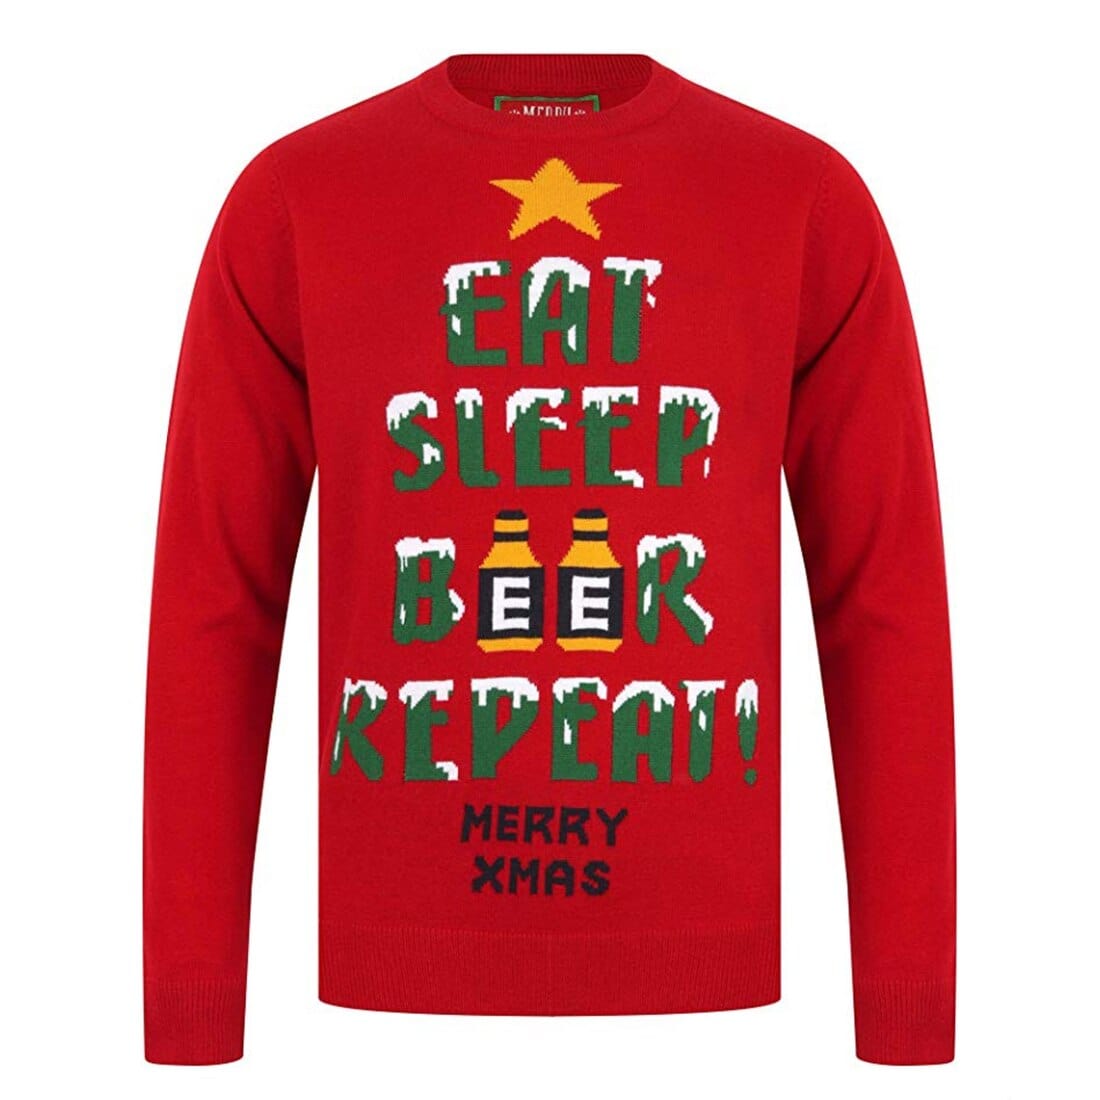 Eat Sleep Beer Repeat vánoční svetr červený